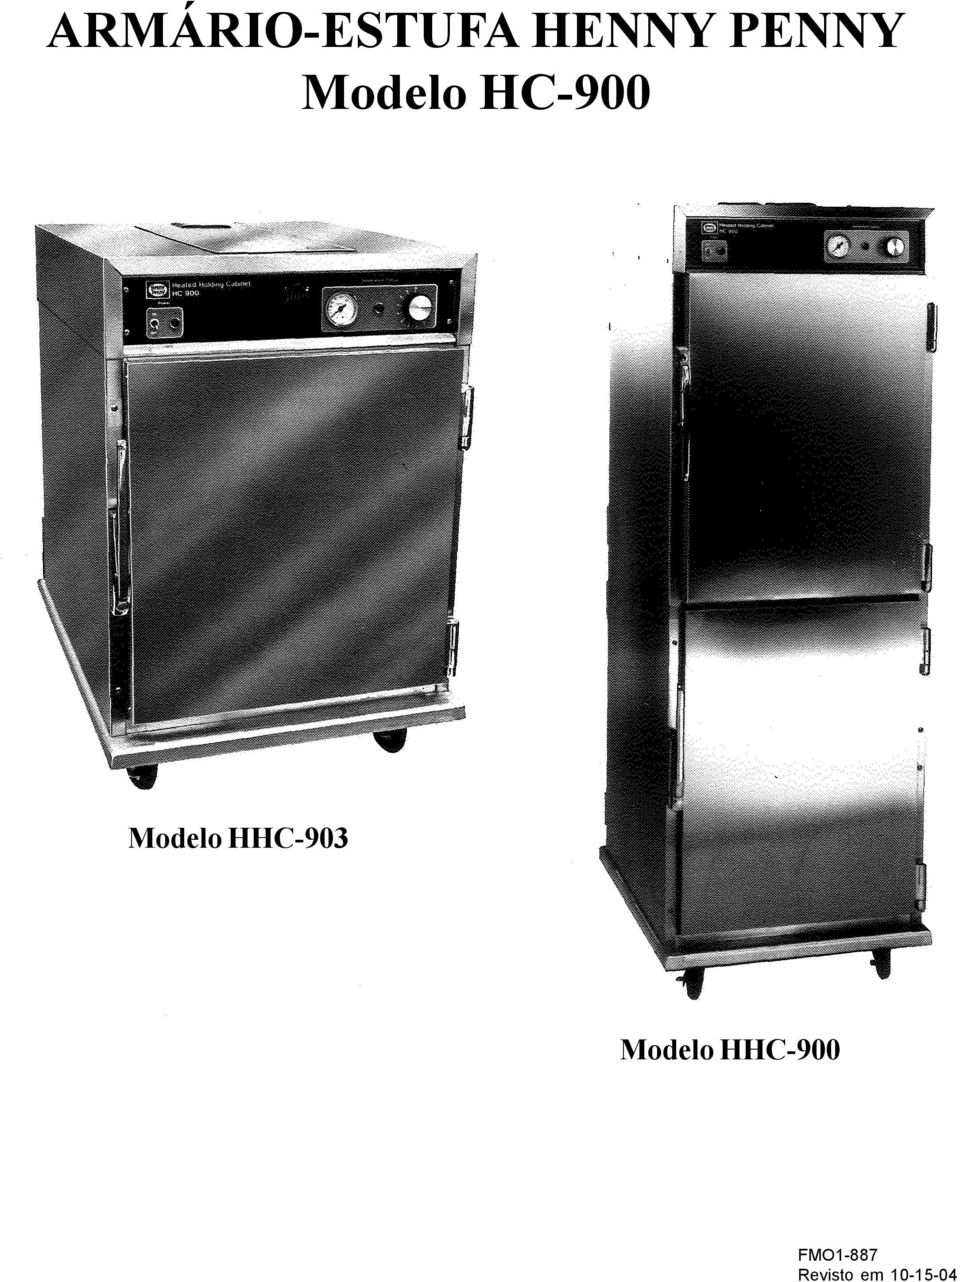 Modelo HHC-900